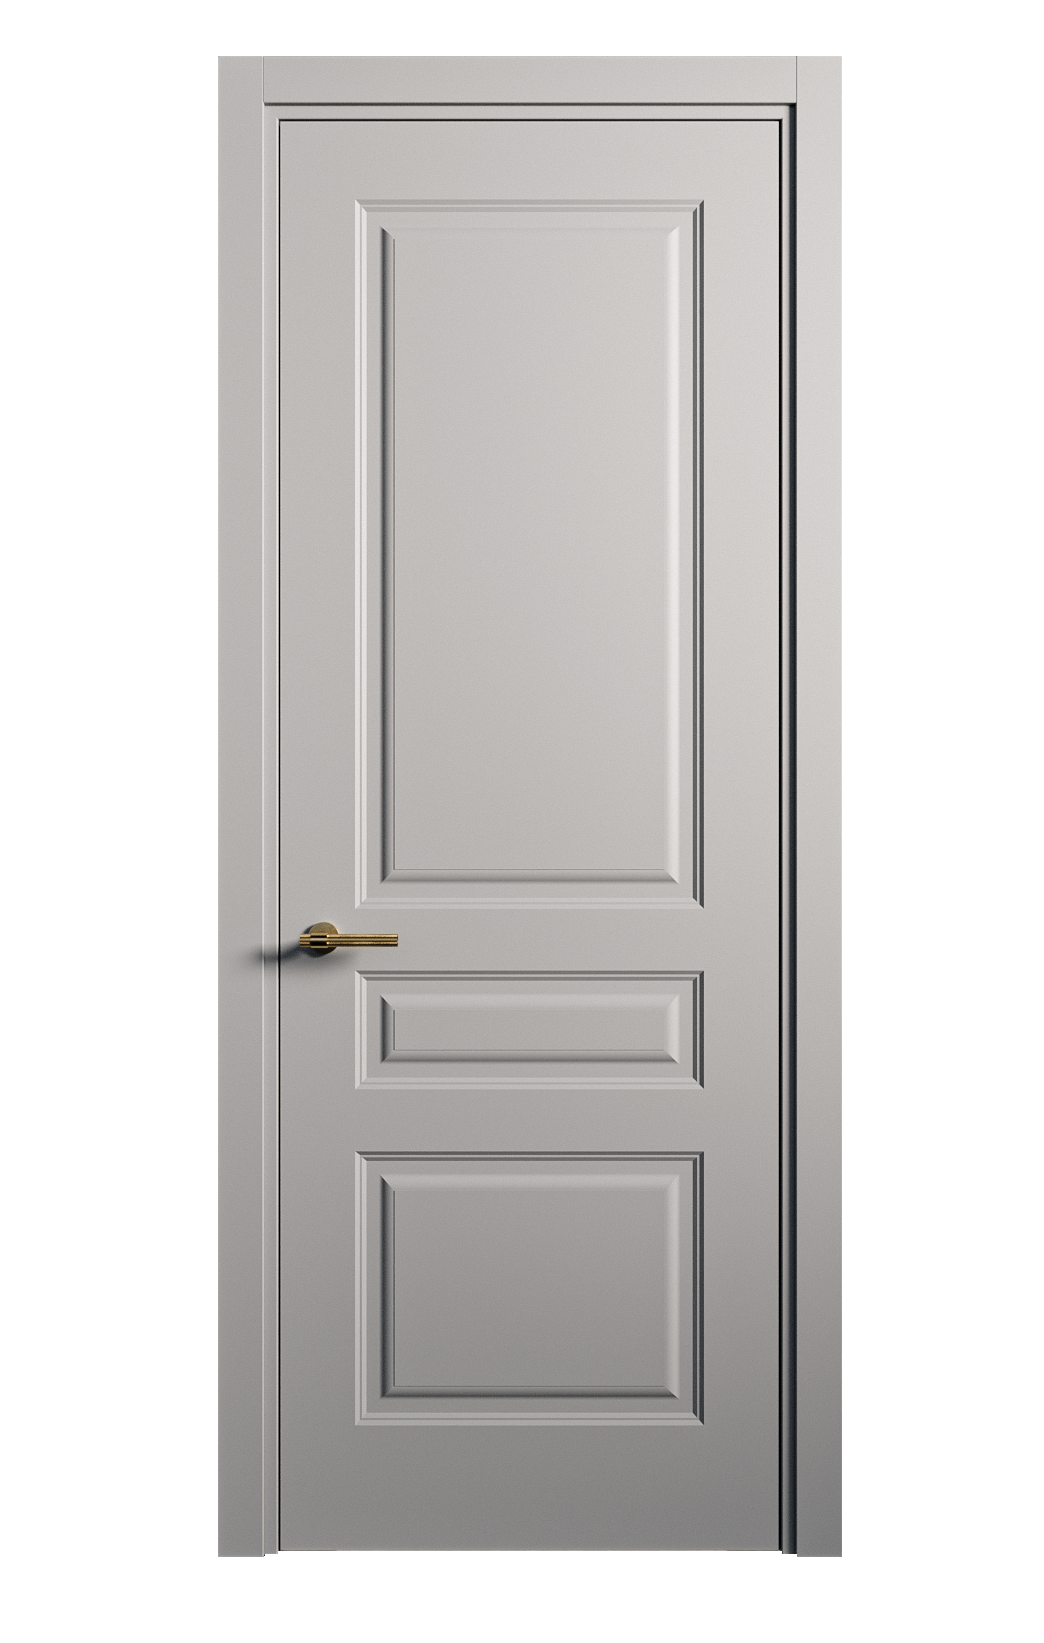 Межкомнатная дверь Вита-2 глухая эмаль ral 7040 26394